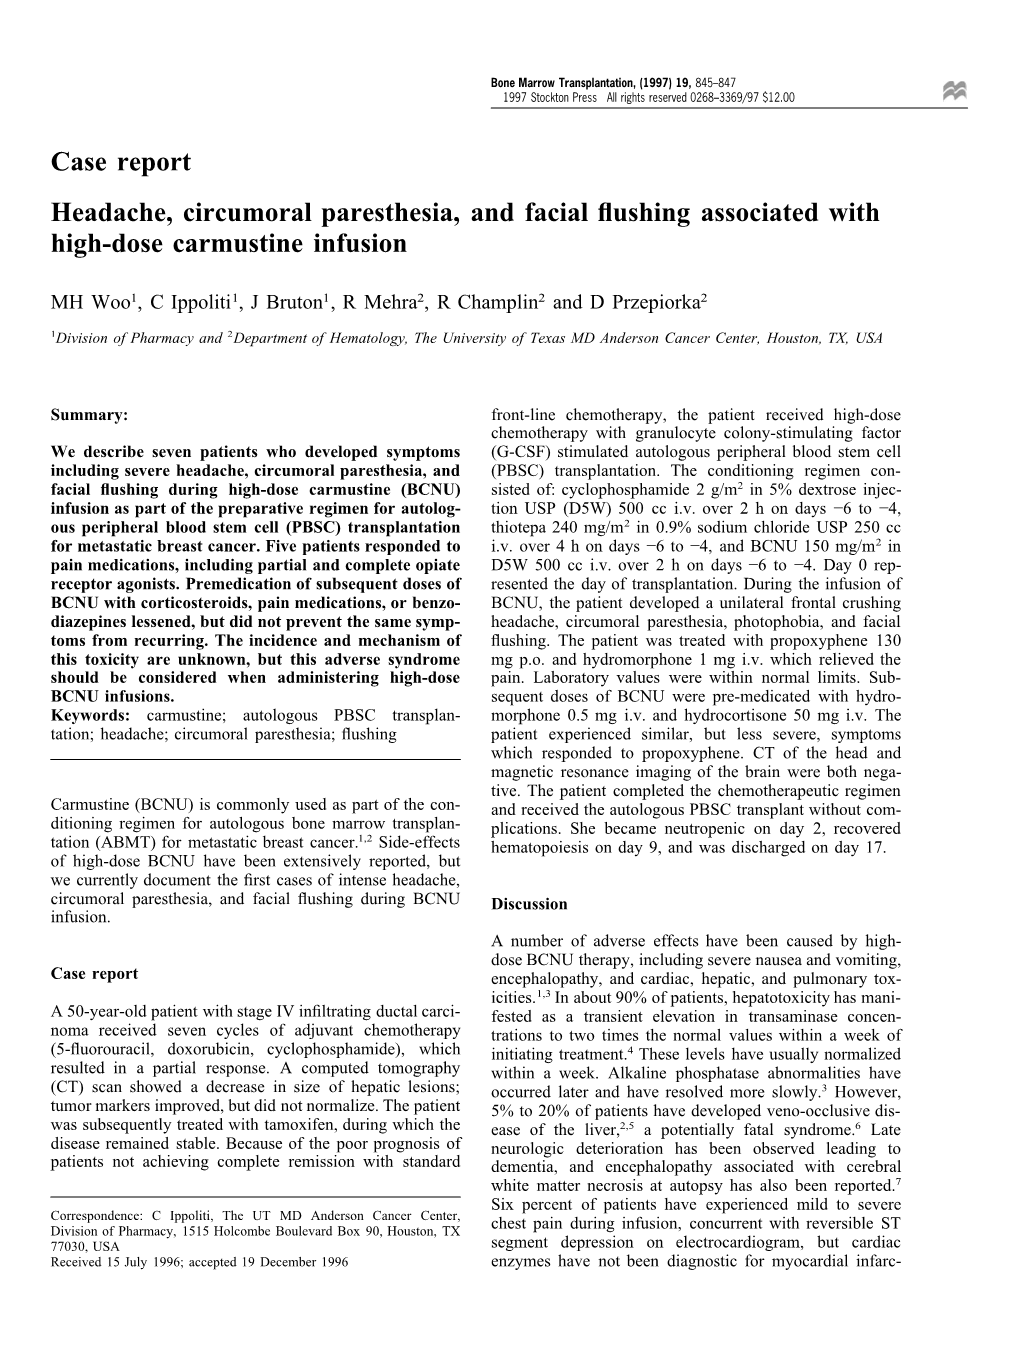 Case Report Headache, Circumoral Paresthesia, and Facial Flushing